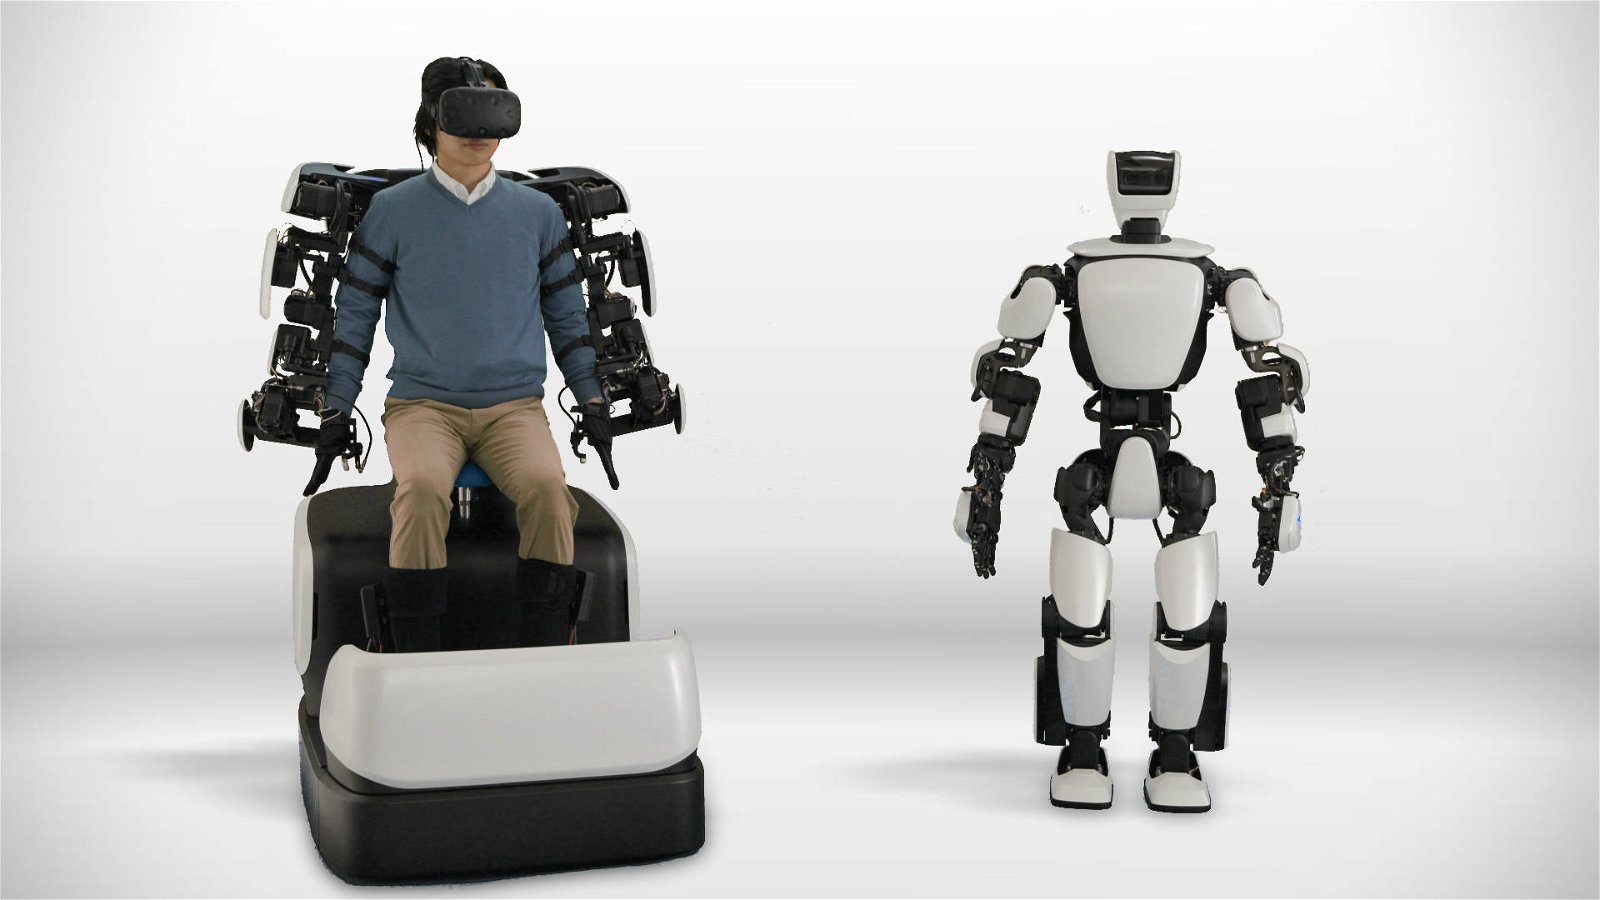 Immagine di Robot umanoide Toyota controllato in remoto grazie alla rete 5G, primo test in Giappone